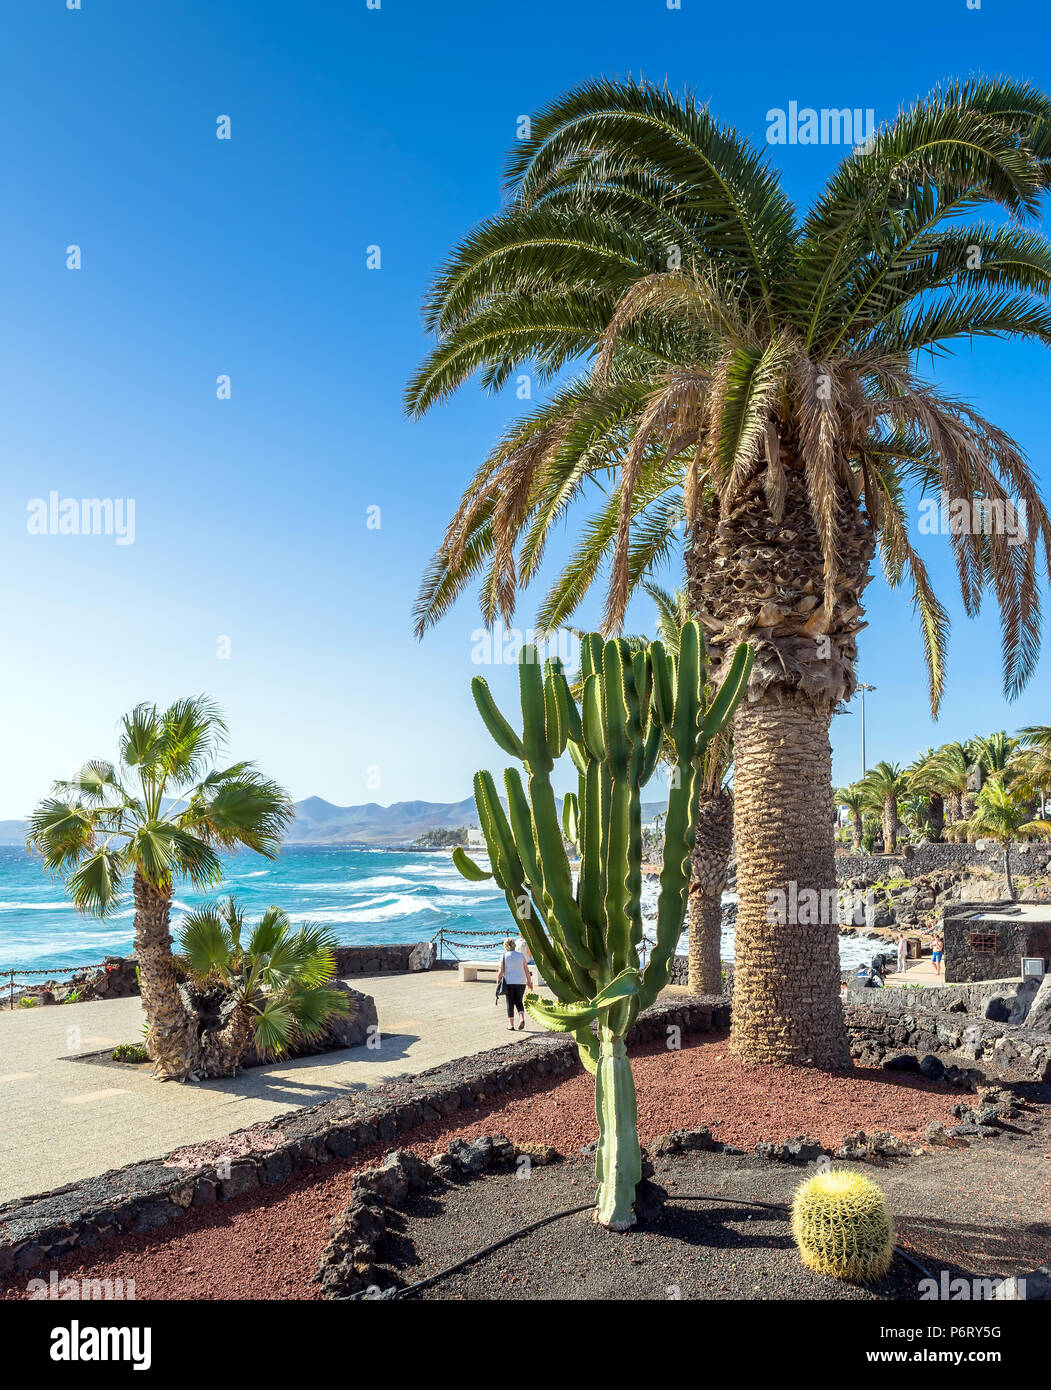 Puerto del Carmen, Spanien - 29. Dezember 2016: Tag der Blick auf die Strandpromenade mit Palmen und die Küste von Puerto del Carmen, Spanien. Puerto del Carmen ist das mai Stockfoto